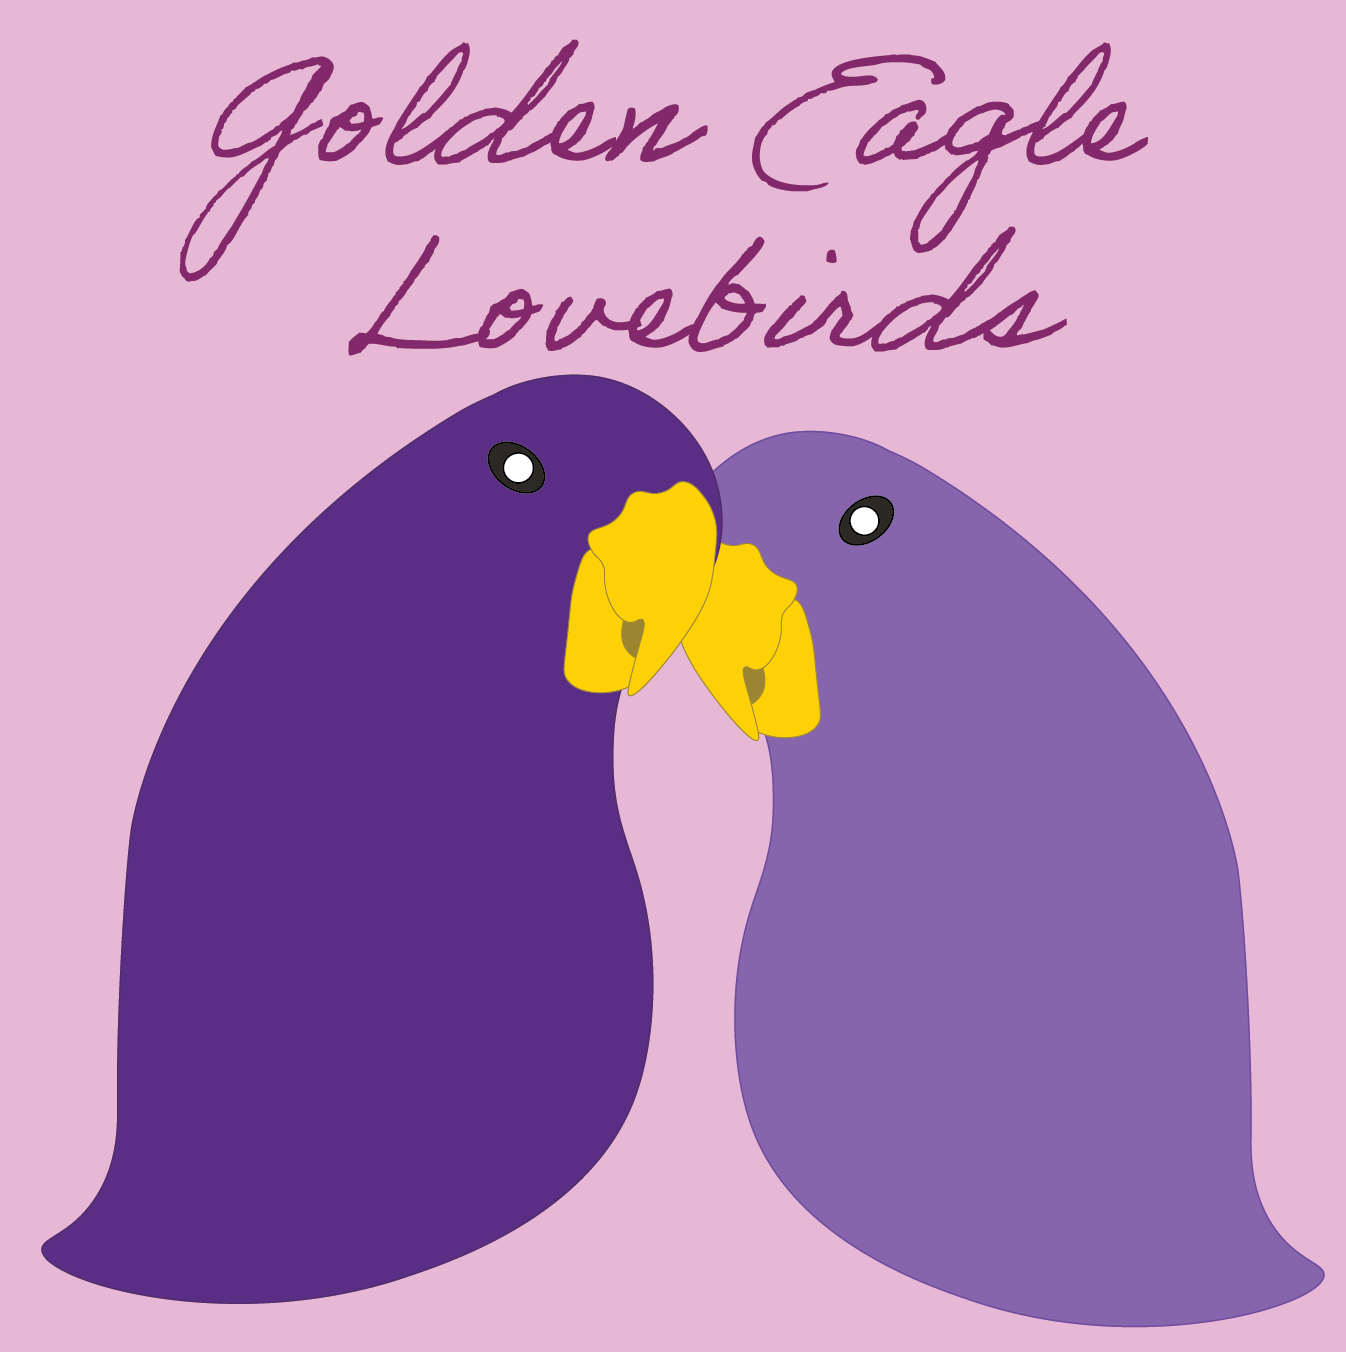 Two purple lovebirds